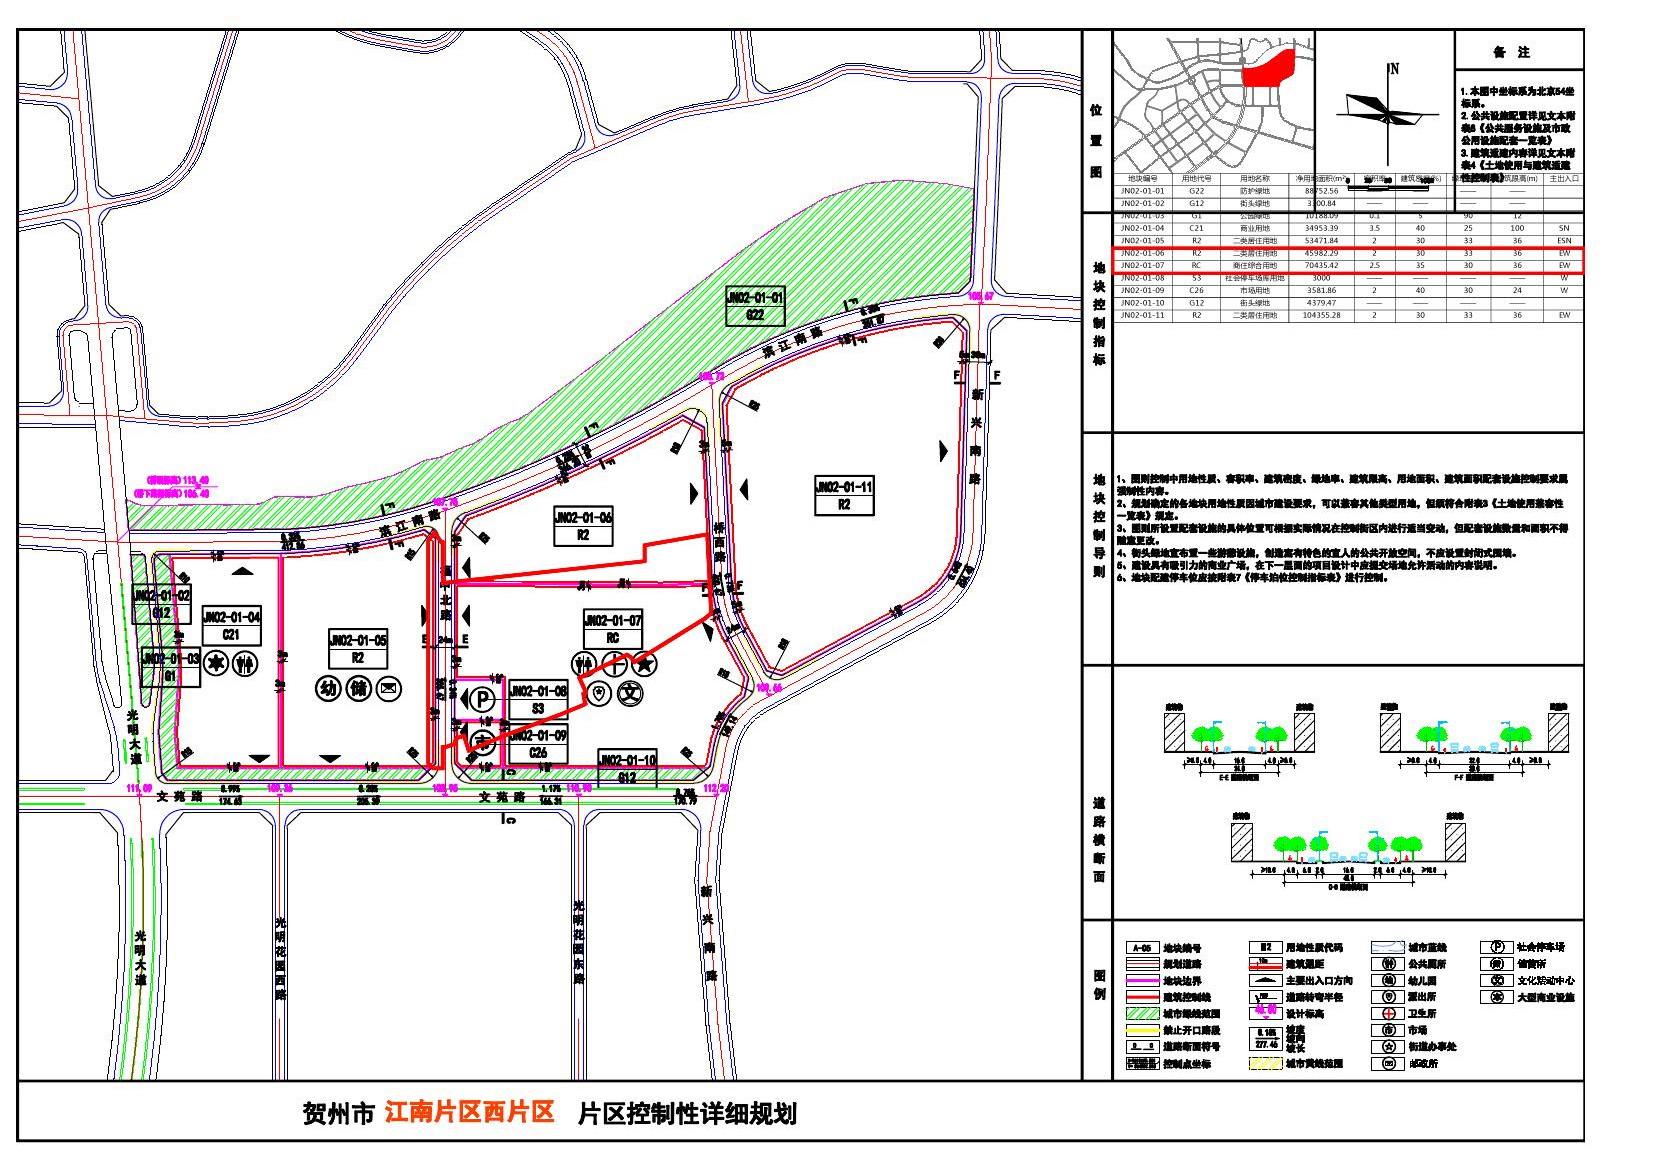 贺州市新兴南路西侧57752.19平方米控制性详细规划调整图则公示